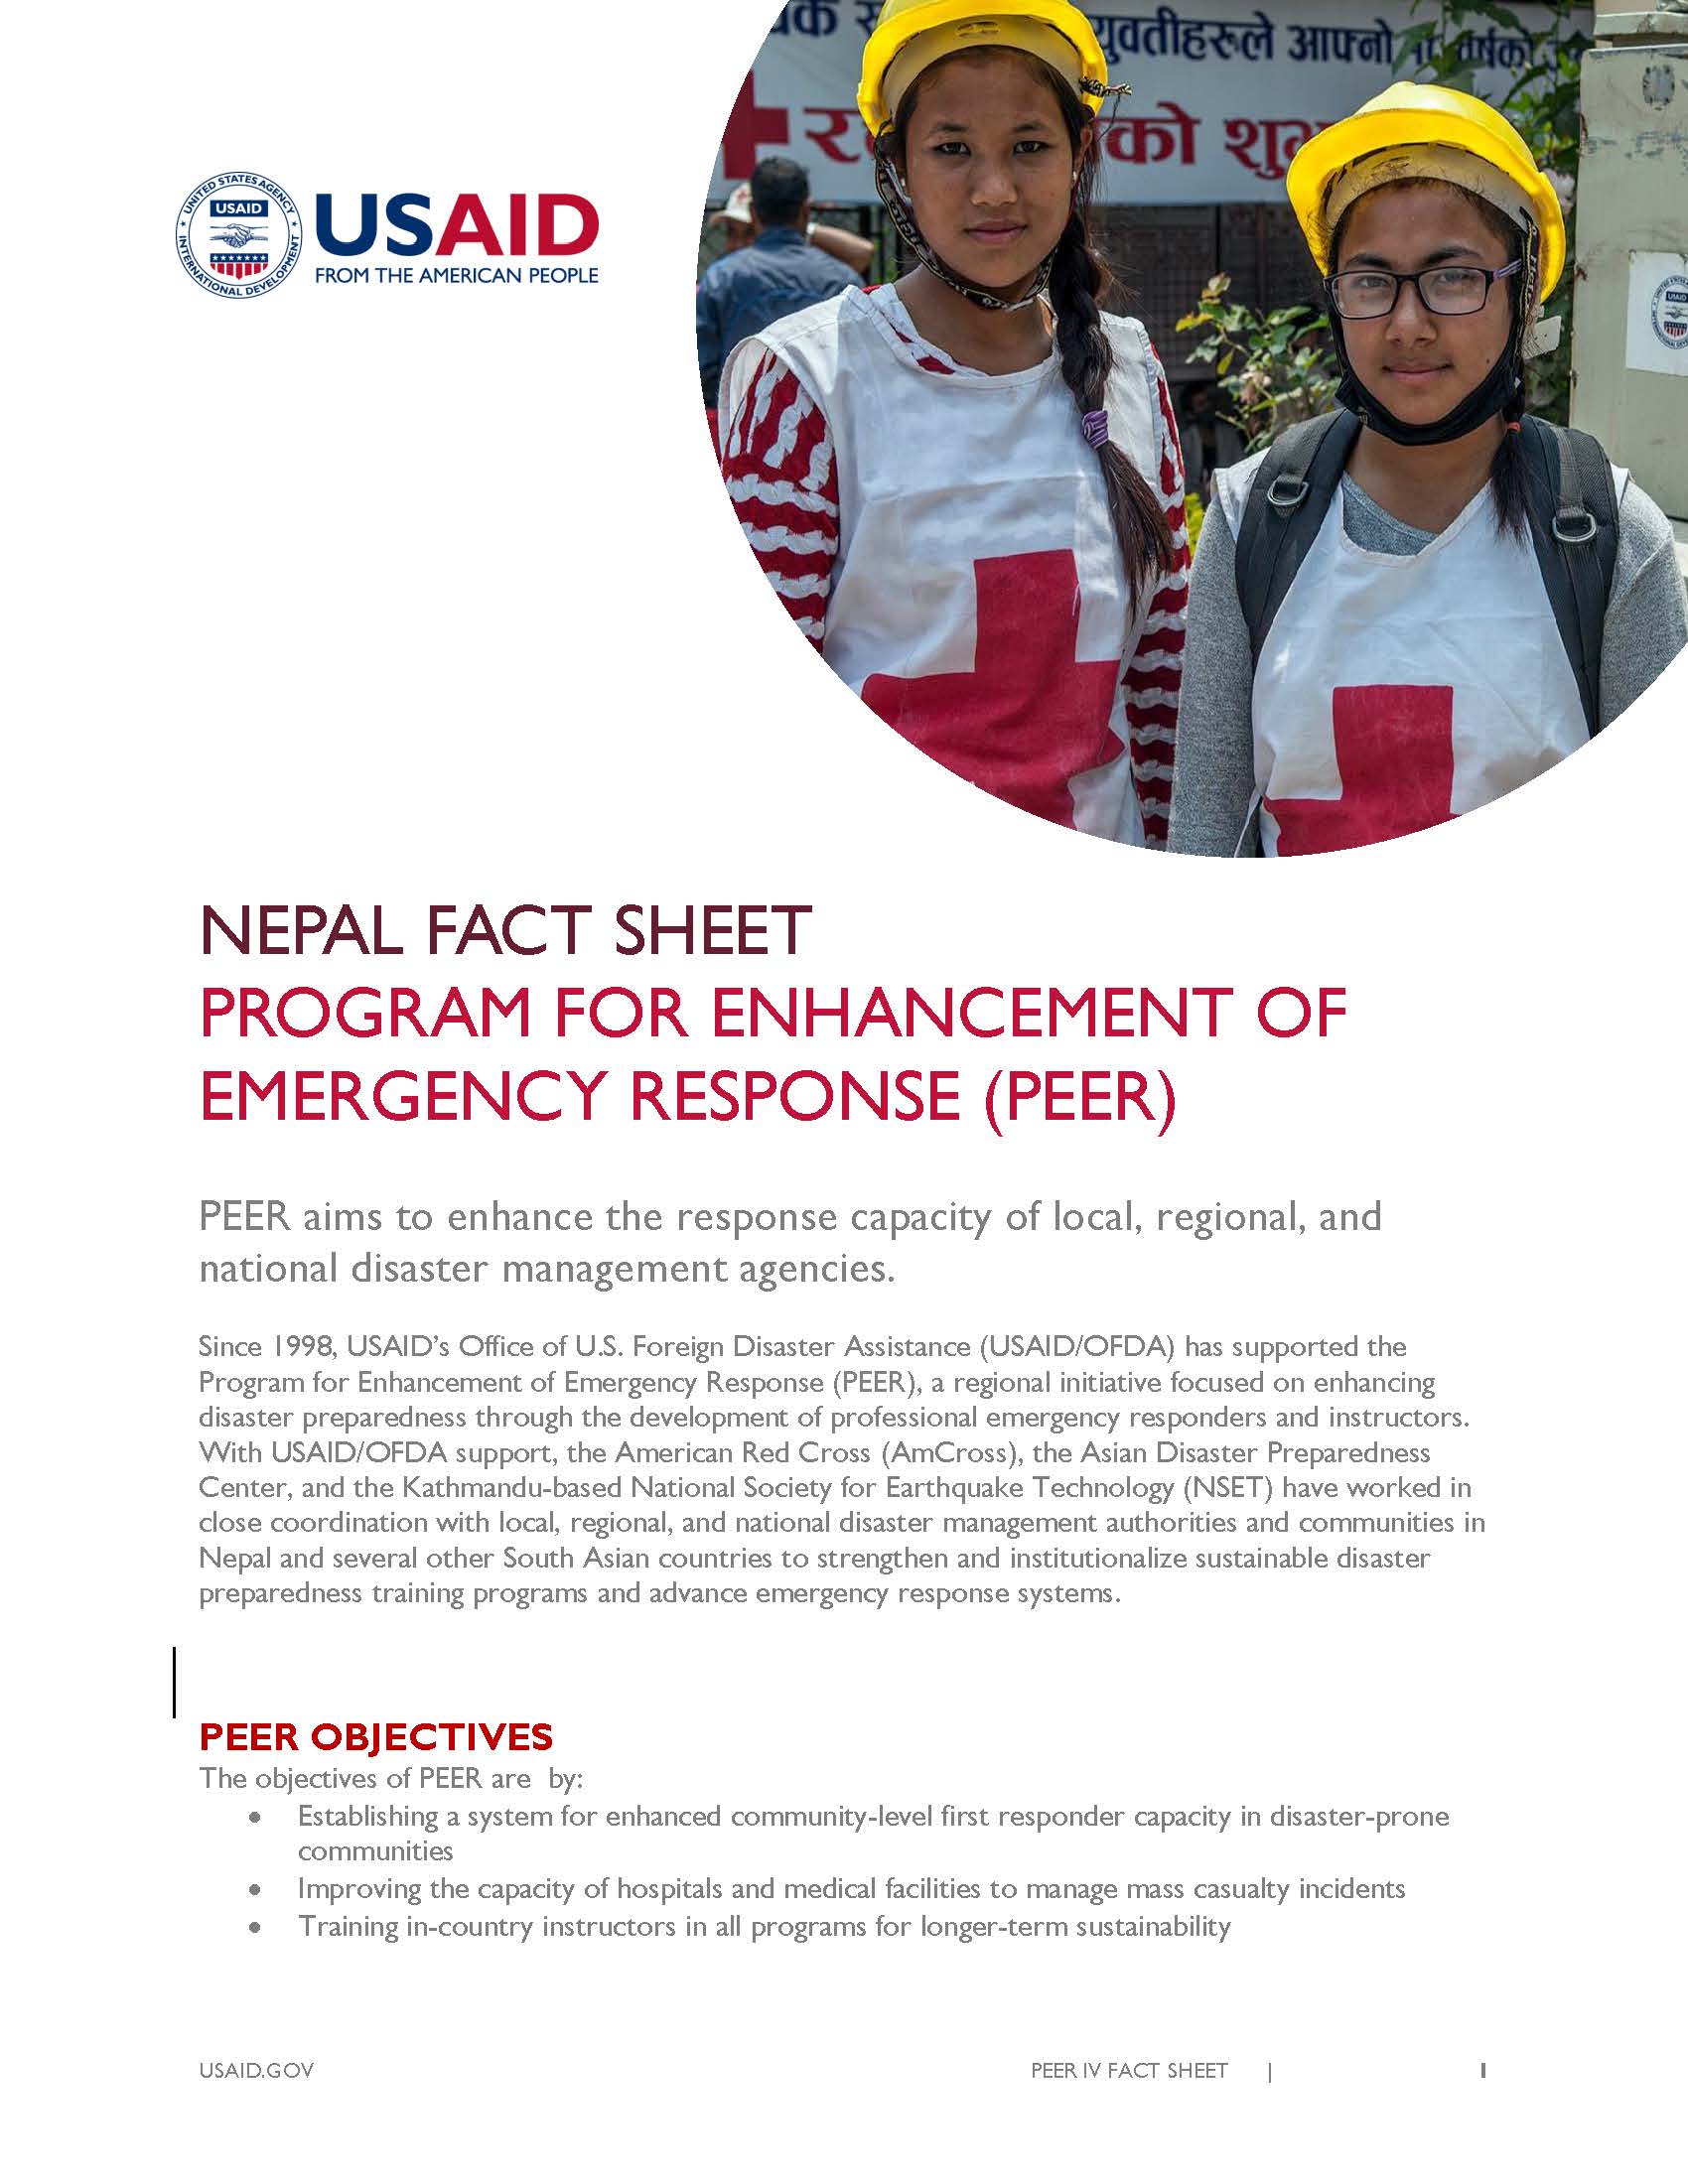 Fact Sheet: PROGRAM FOR ENHANCEMENT OF EMERGENCY RESPONSE (PEER) 